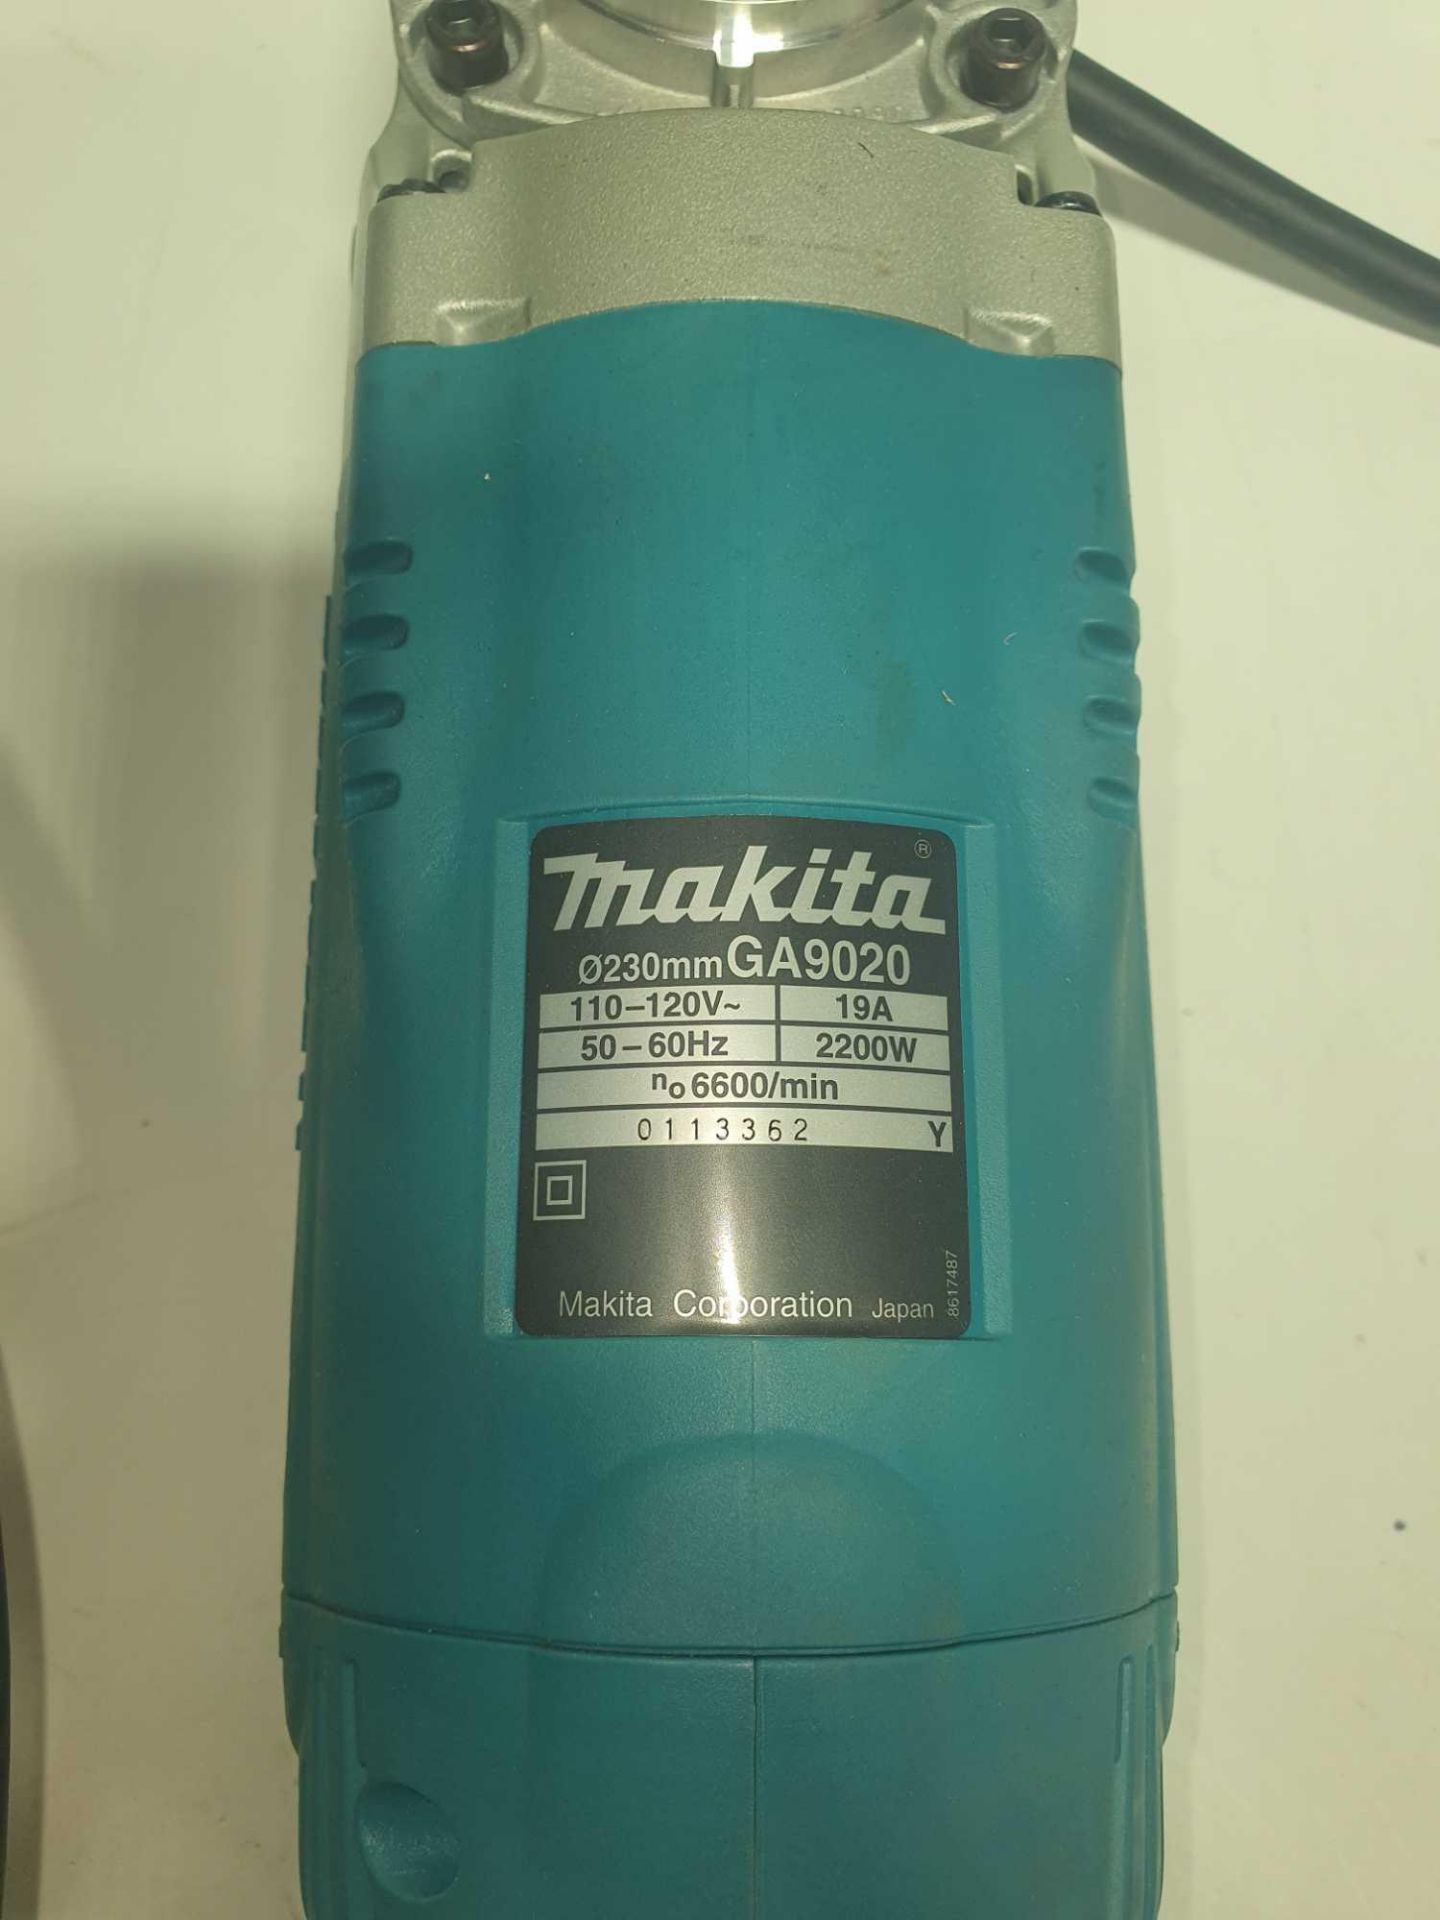 Makita angle grinder - Image 3 of 3